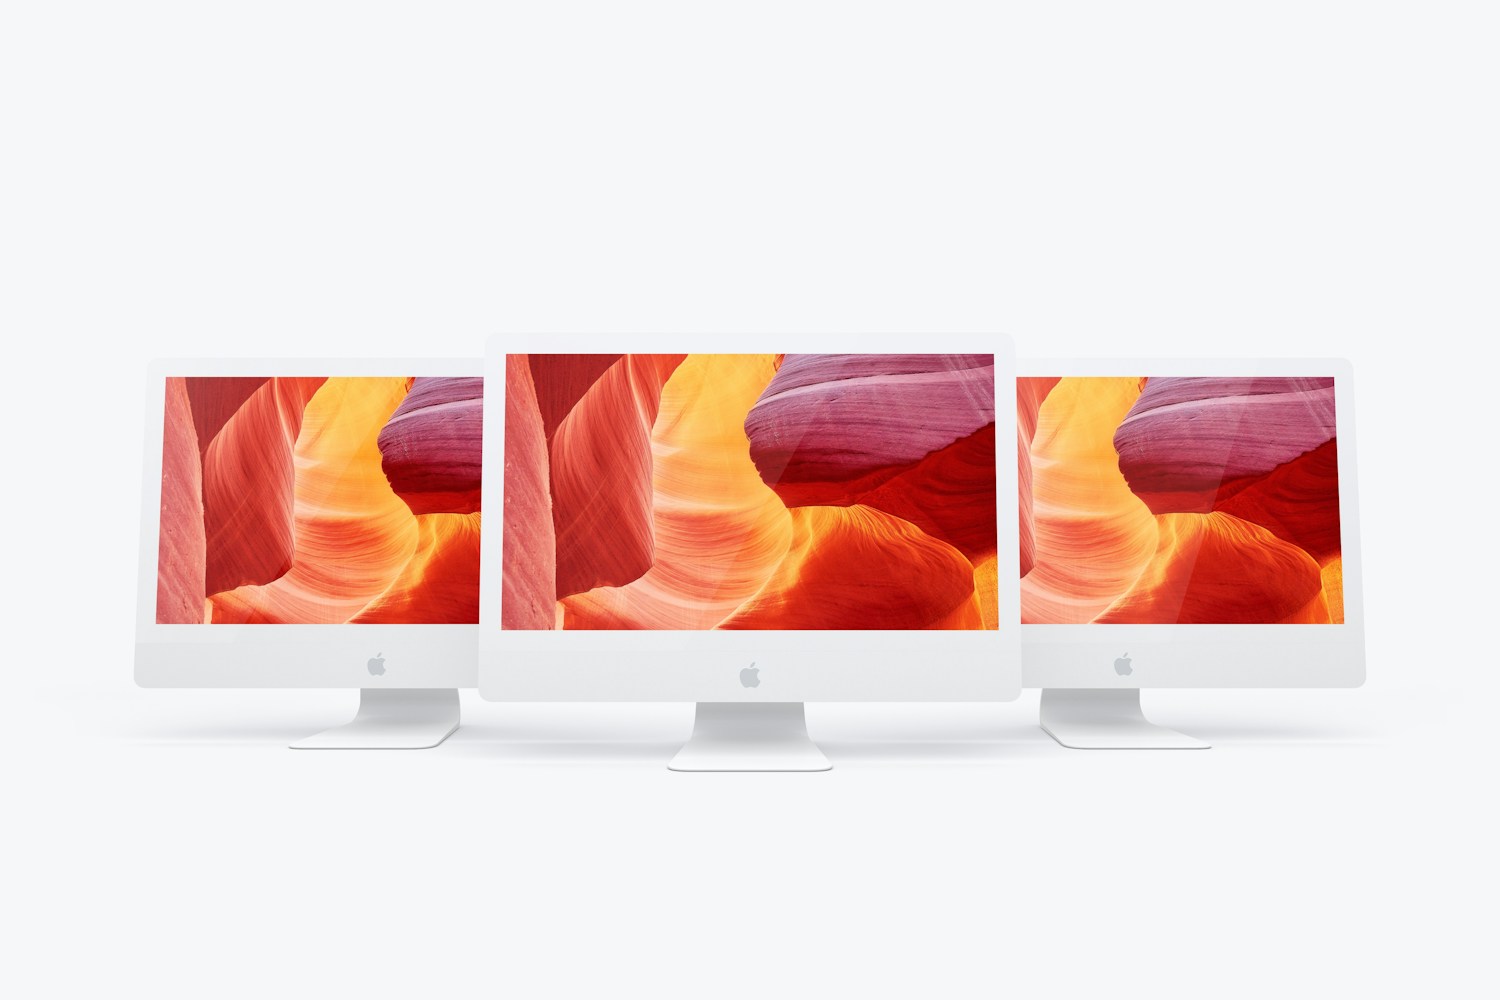 Maqueta de iMac 27” Multicolor 02